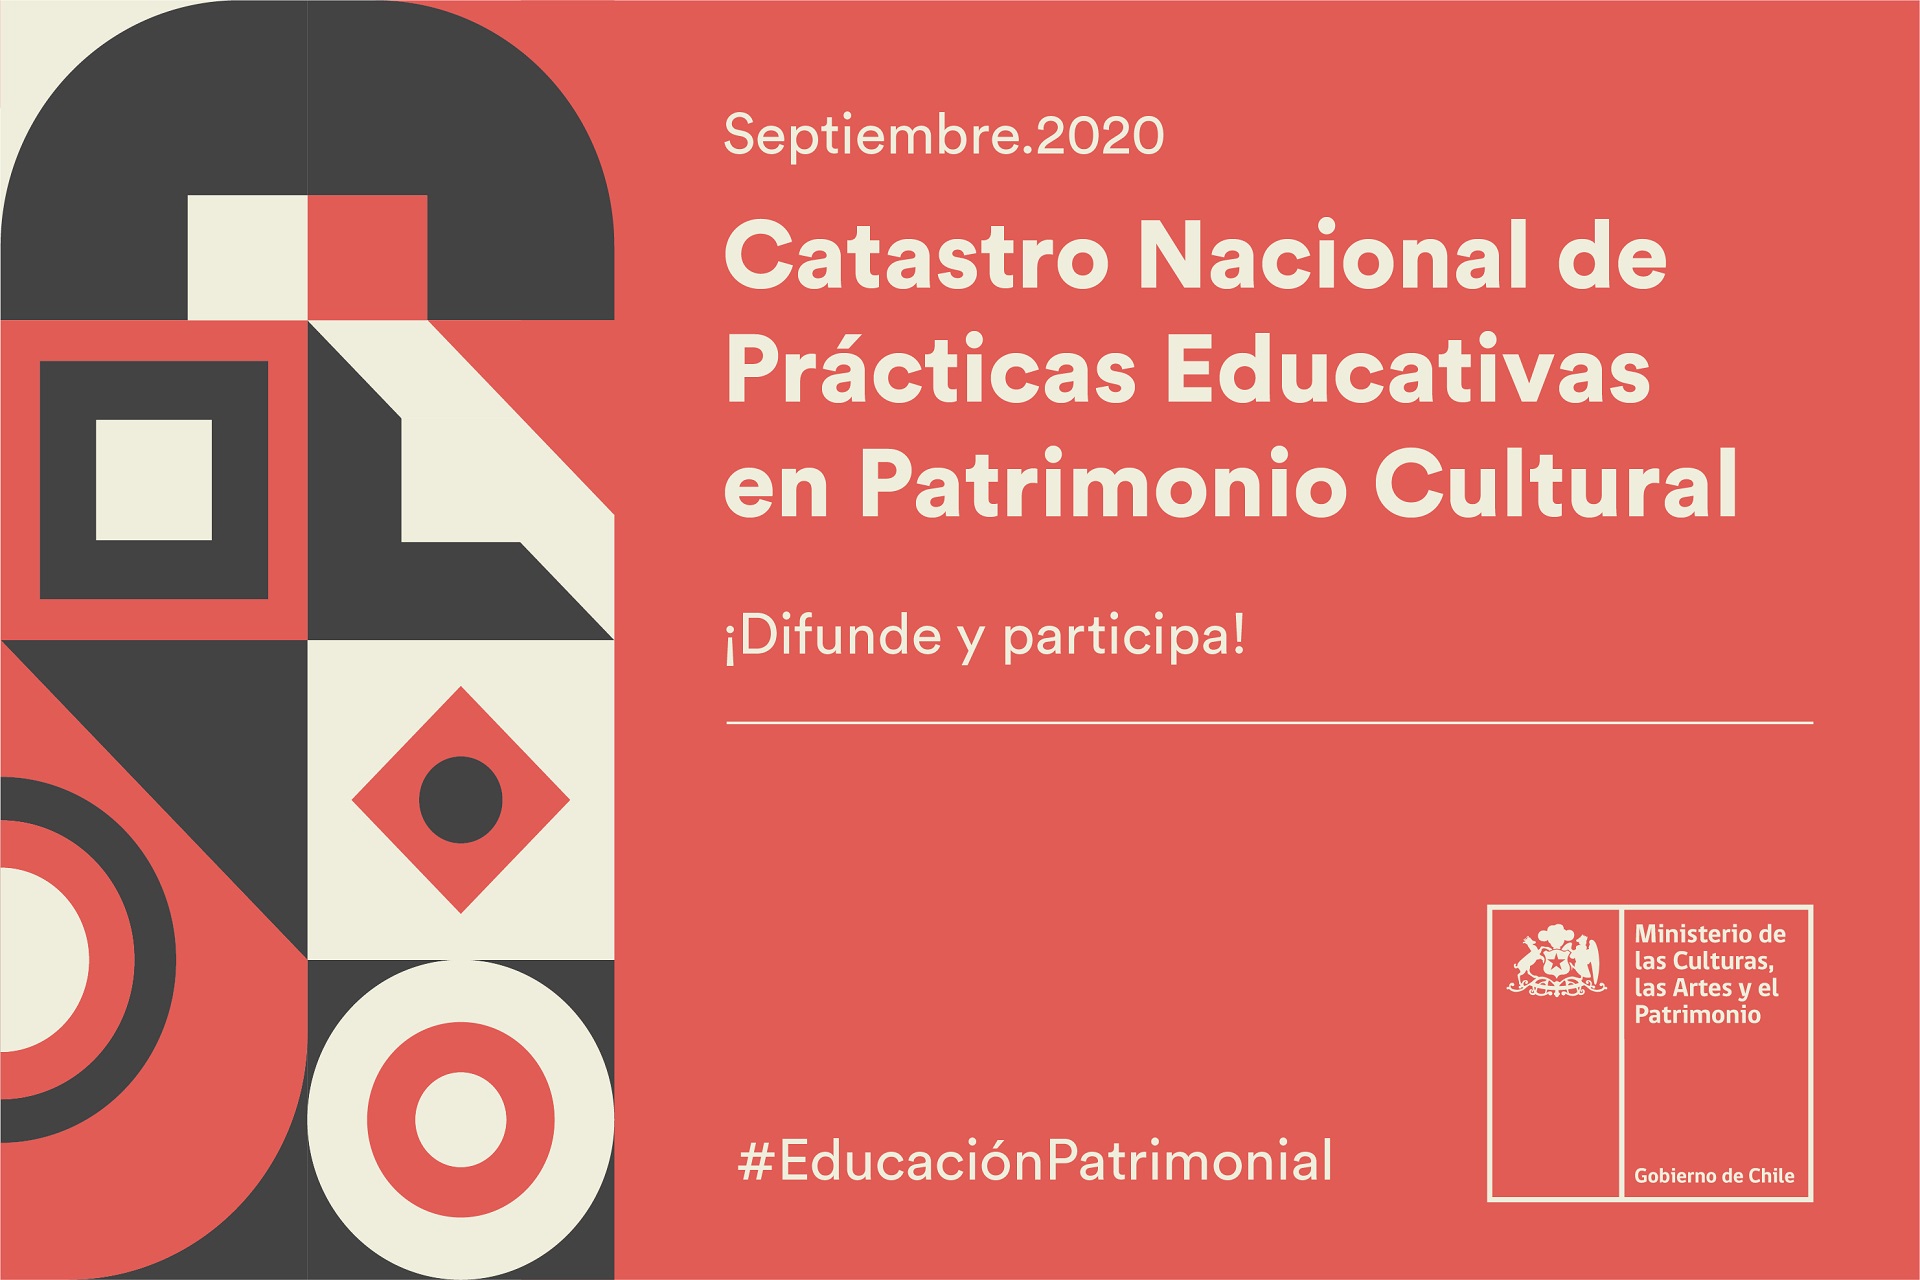 MINISTERIO DE LAS CULTURAS LANZA PRIMER CATASTRO NACIONAL DE PRÁCTICAS EDUCATIVAS EN PATRIMONIO CULTURAL 3